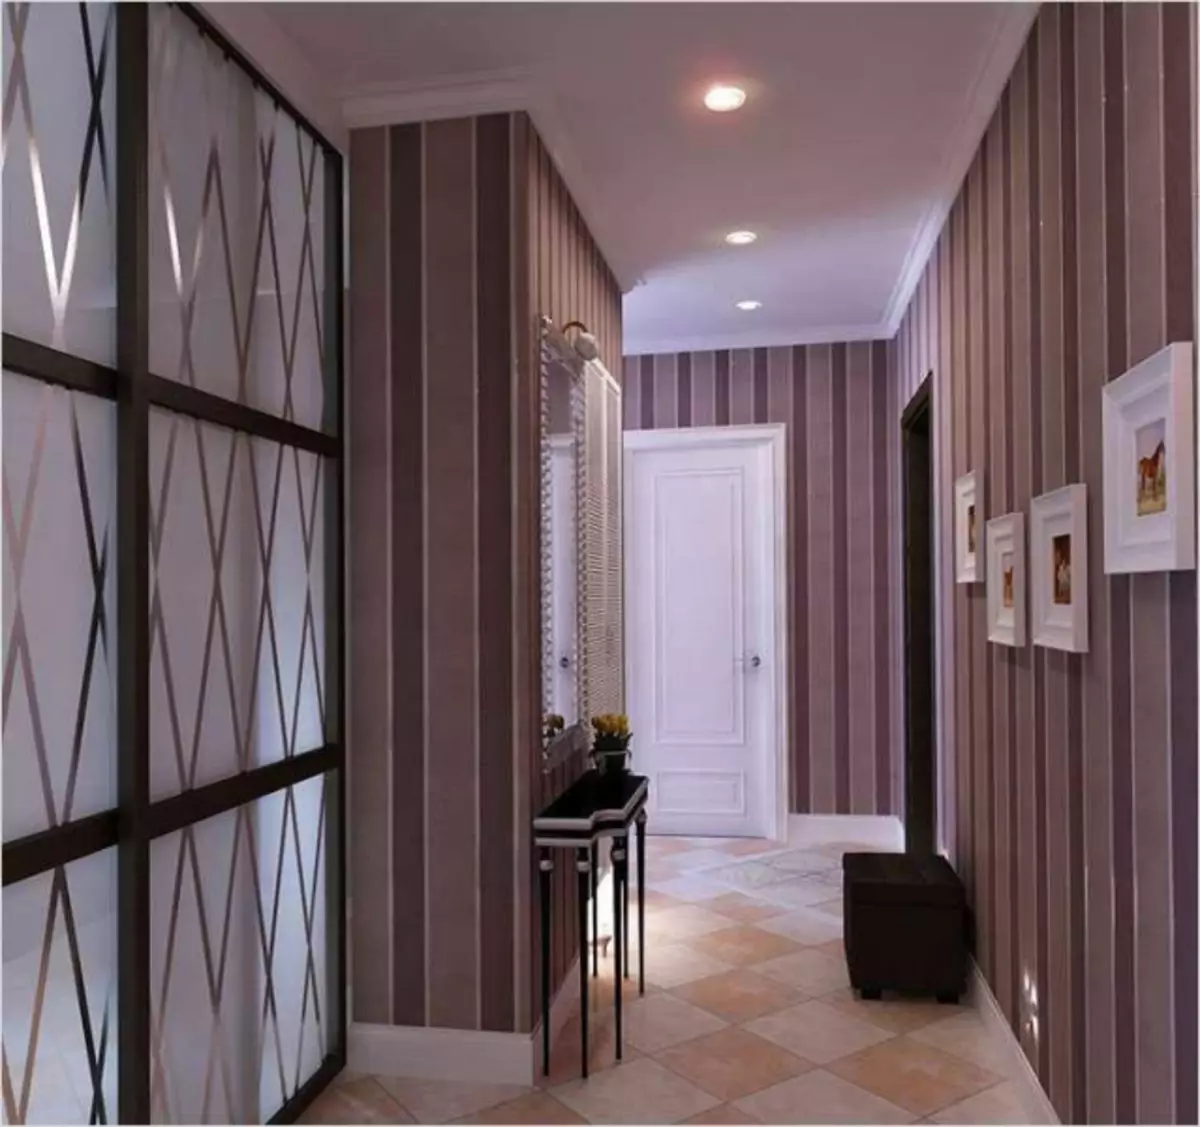 Wallpapers in de gang in het appartement Foto 2019: Voor de gang, ontwerp, moderne ideeën van interieurs, modieus, wat te gaan, opties, vloeistof in kleine, video